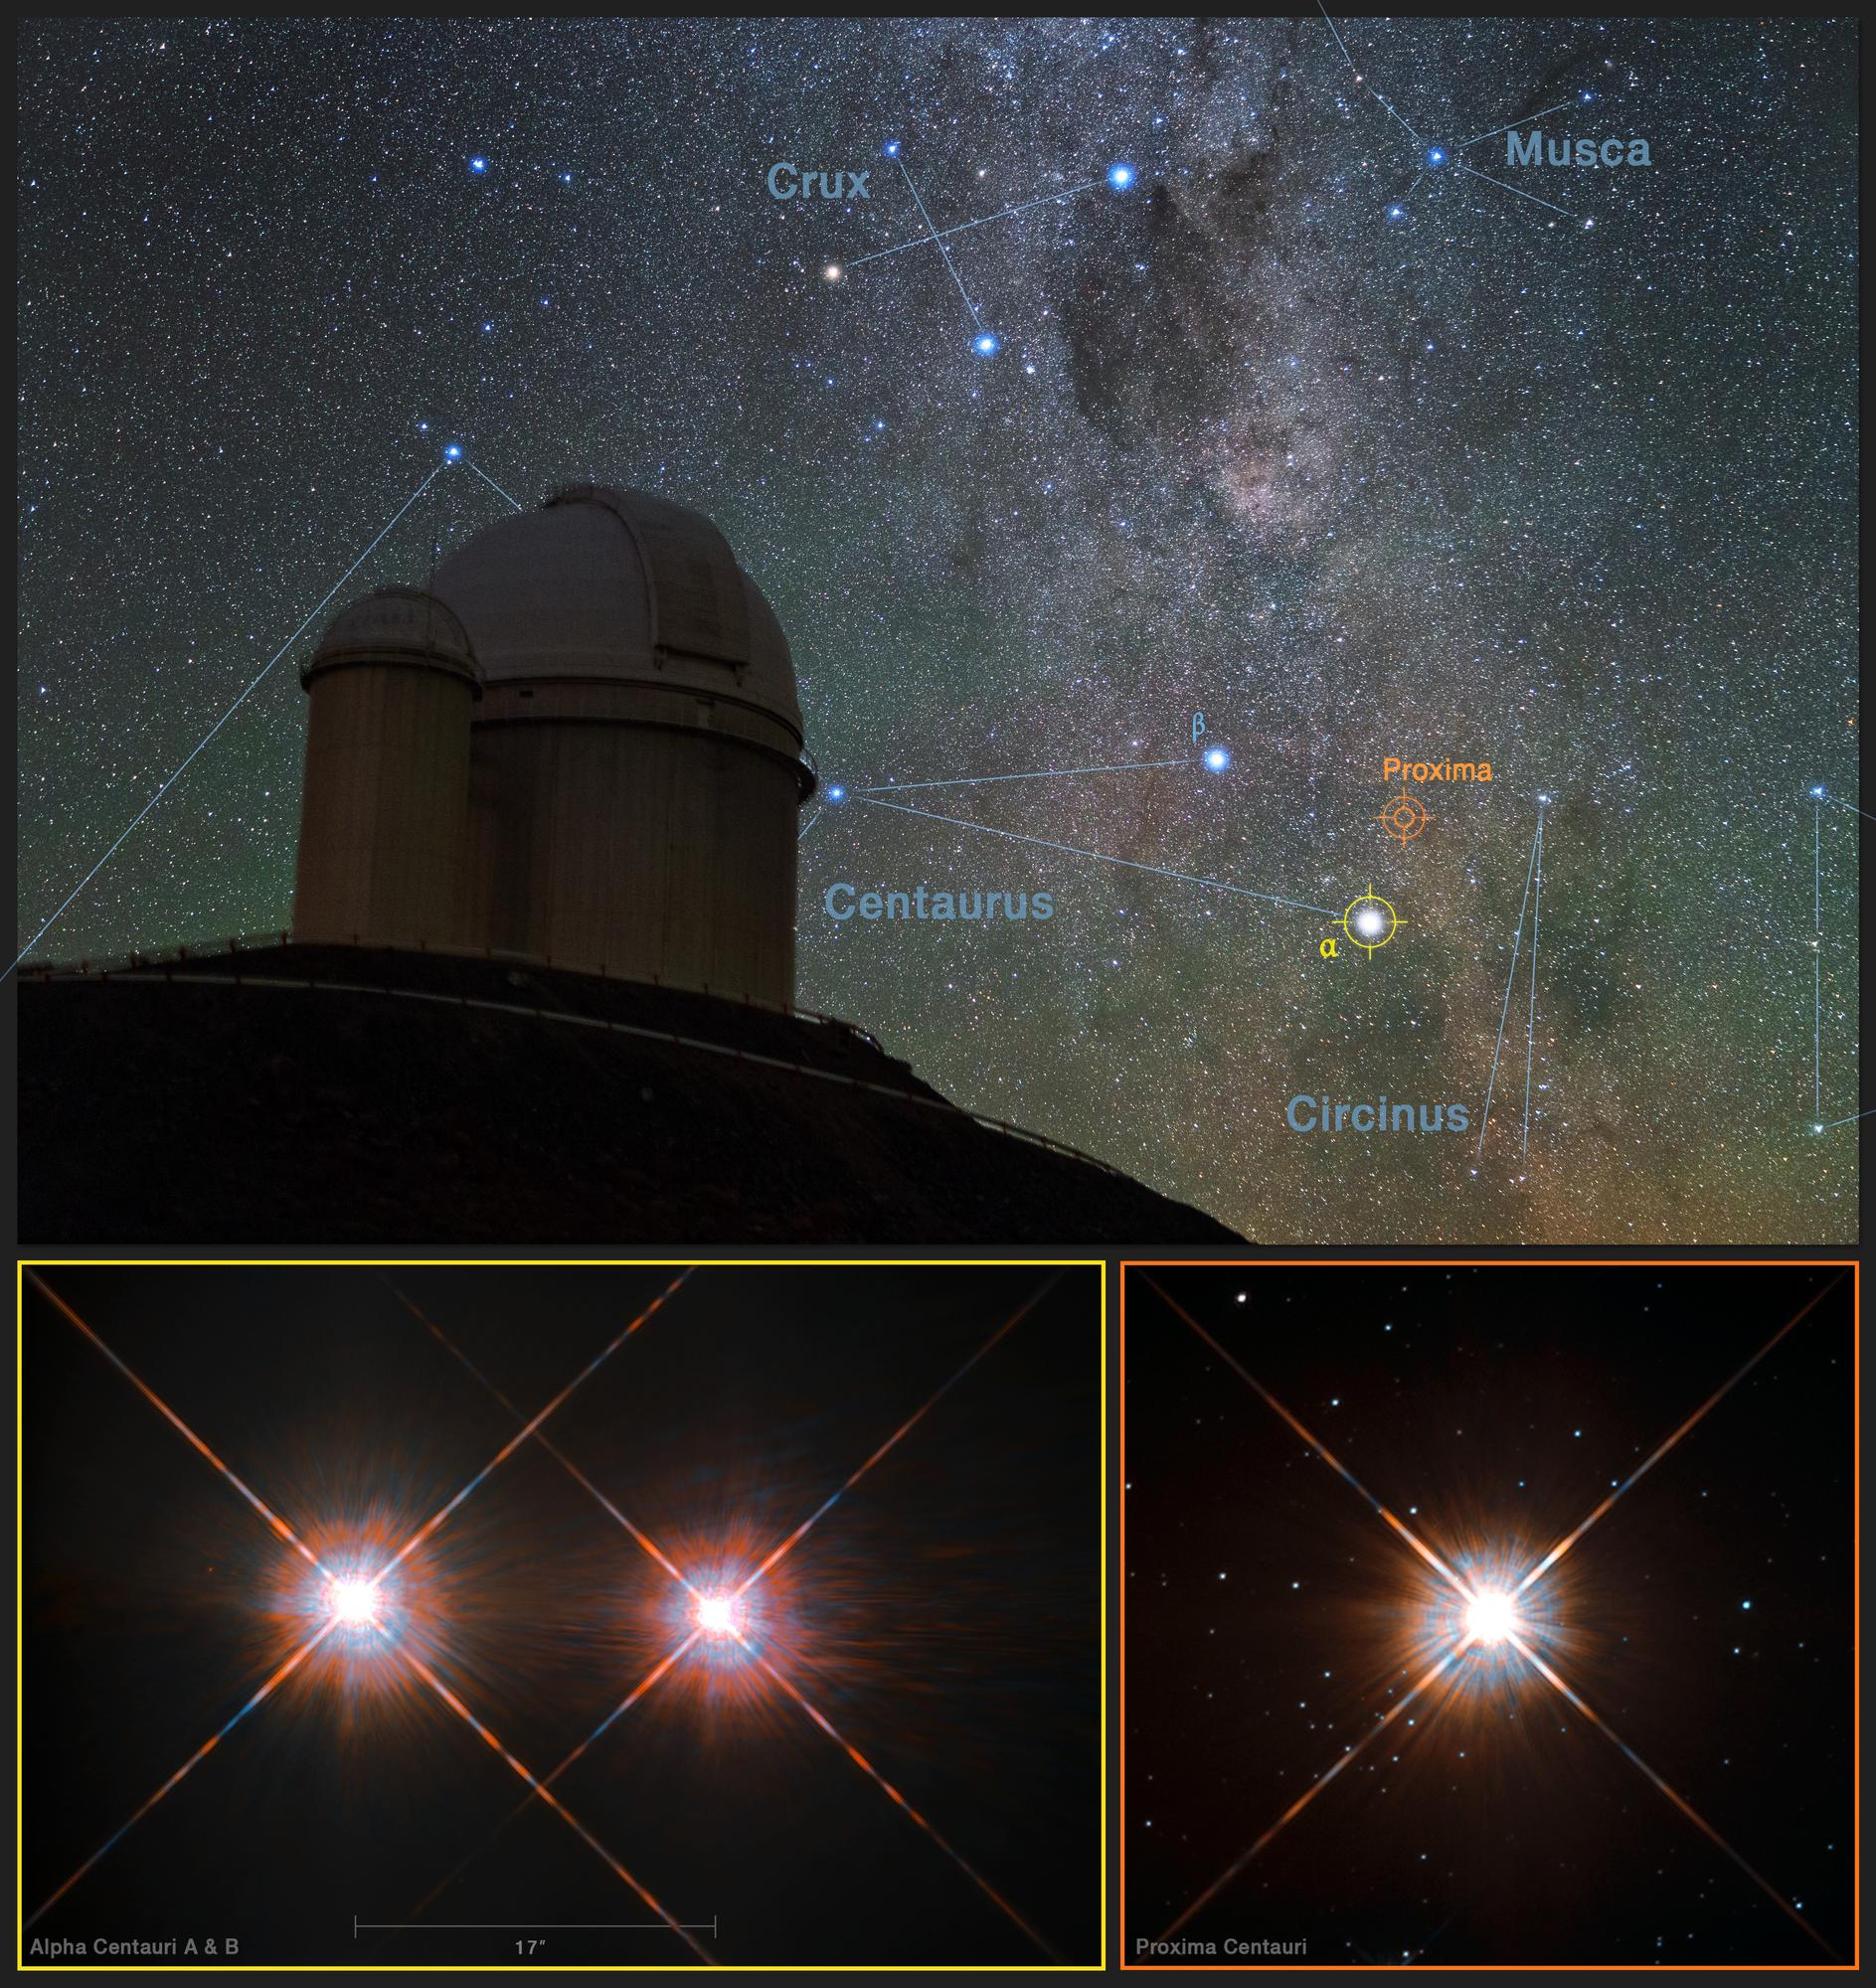 Vue du ciel austral au-dessus du télescope de 3,6 m de l'ESO à La Silla (Chili), qui a permis la détection de l'exoplanète Proxima b. Celle-ci est en orbite autour de la naine rouge Proxima Centauri (en bas à droite) voisine des étoiles Alpha Centauri A et B (à gauche), qui constituent le système stellaire le plus proche du nôtre. [AFP - EUROPEAN SOUTHERN OBSERVATORY]